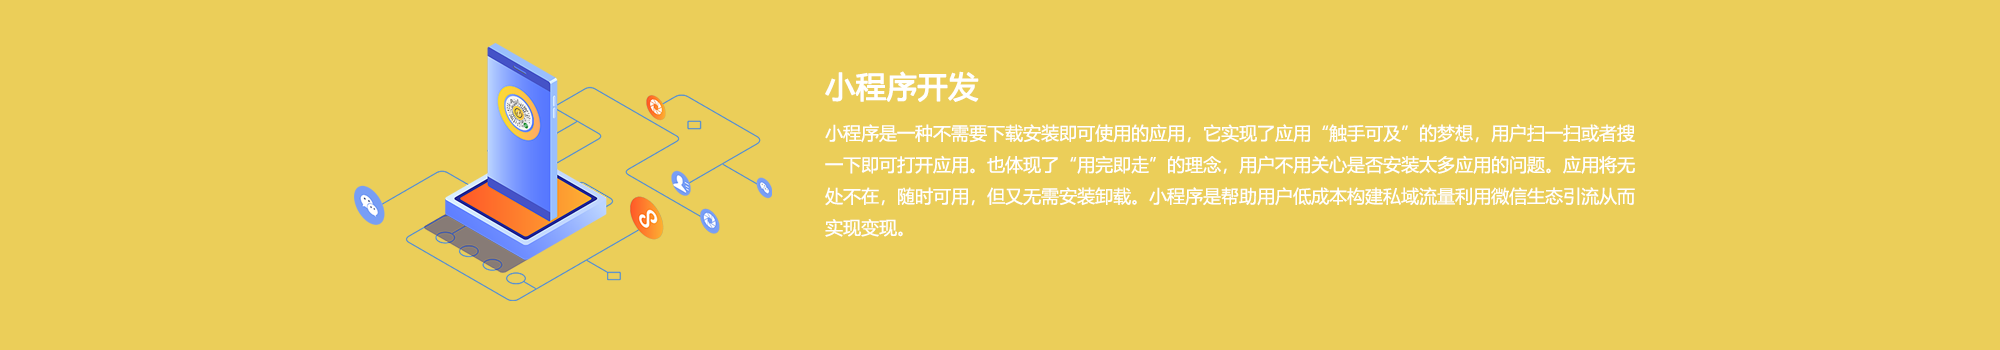 上海小程序开发公司的小程序开发优势